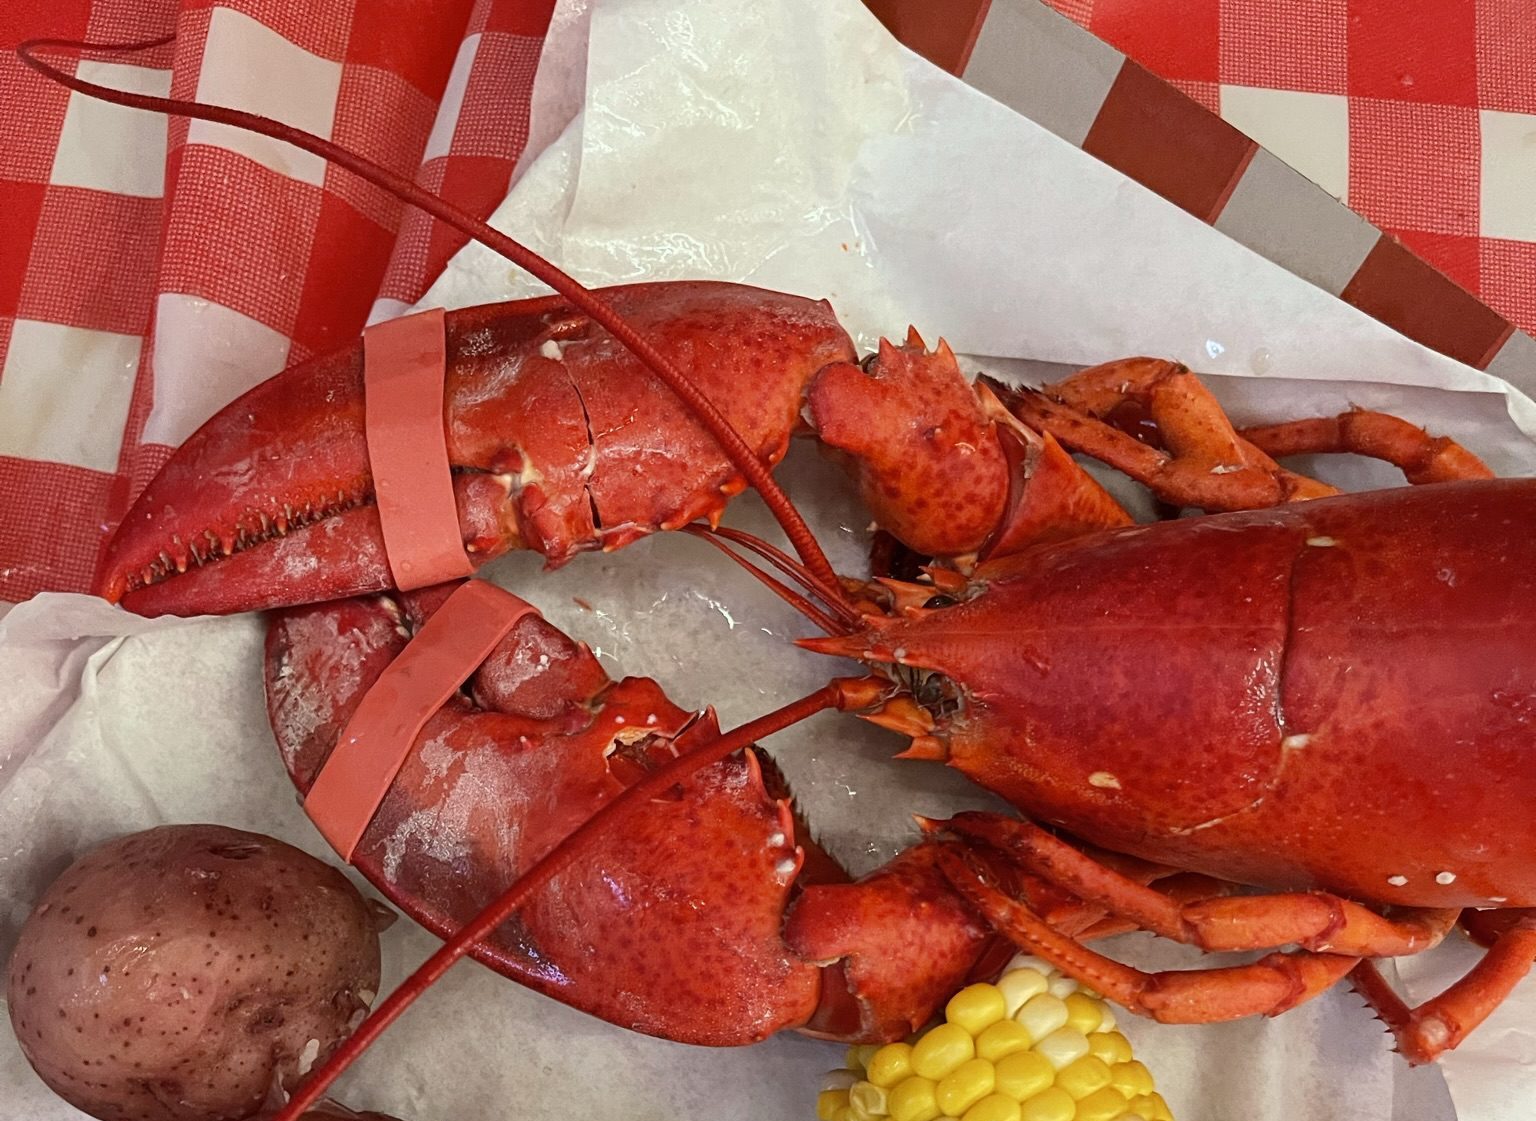 Lobster at Lobster Fest at Navy Pier